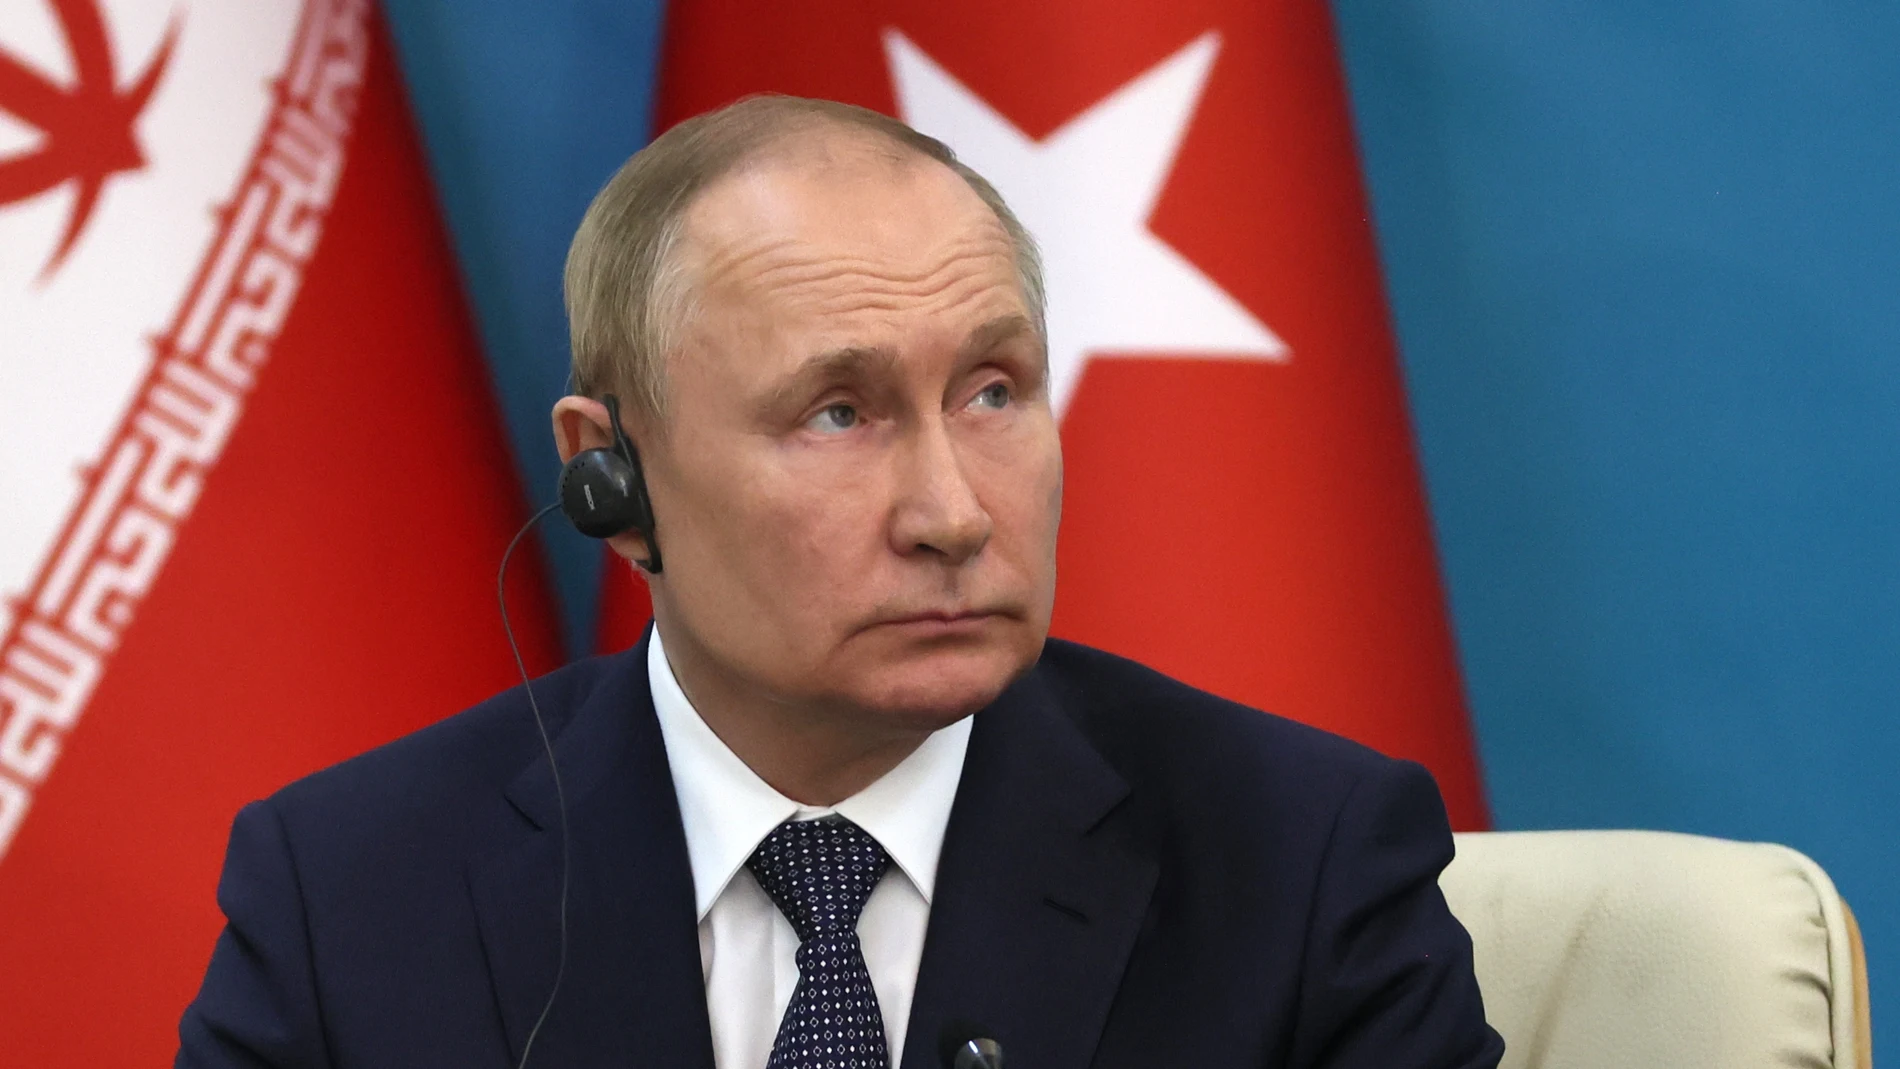 El presidente ruso, Vladimir Putin, asiste a una declaración conjunta con los presidentes iraní y turco tras sus conversaciones durante una cumbre trilateral sobre Siria en Teherán